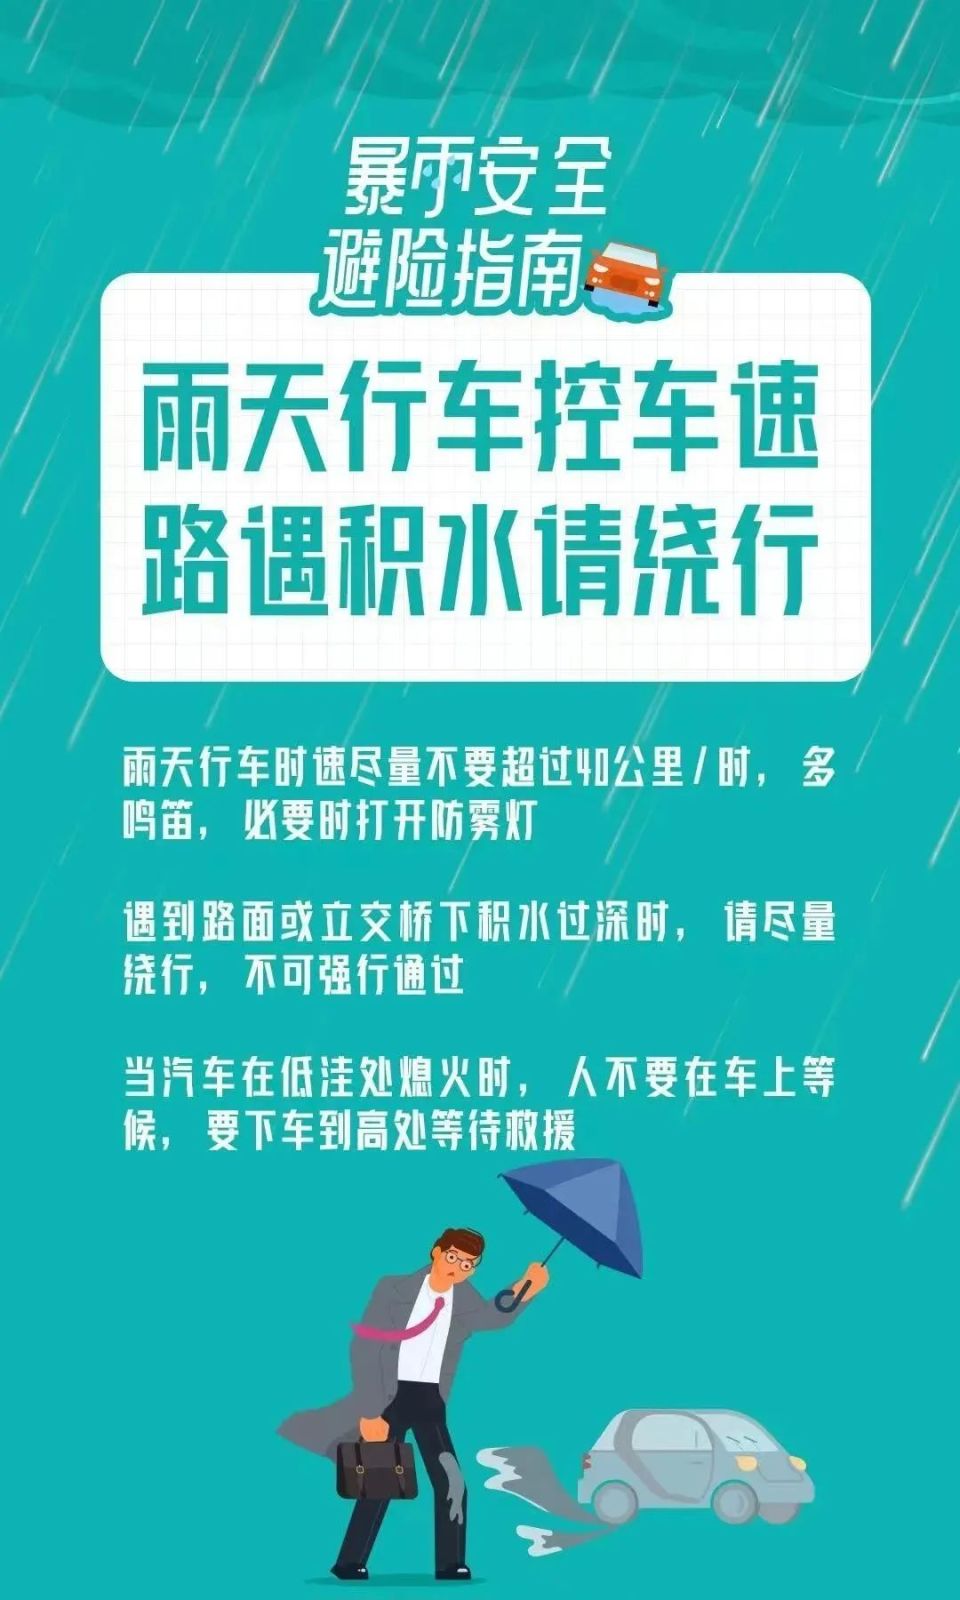 深圳分区暴雨红色预警信号生效中!